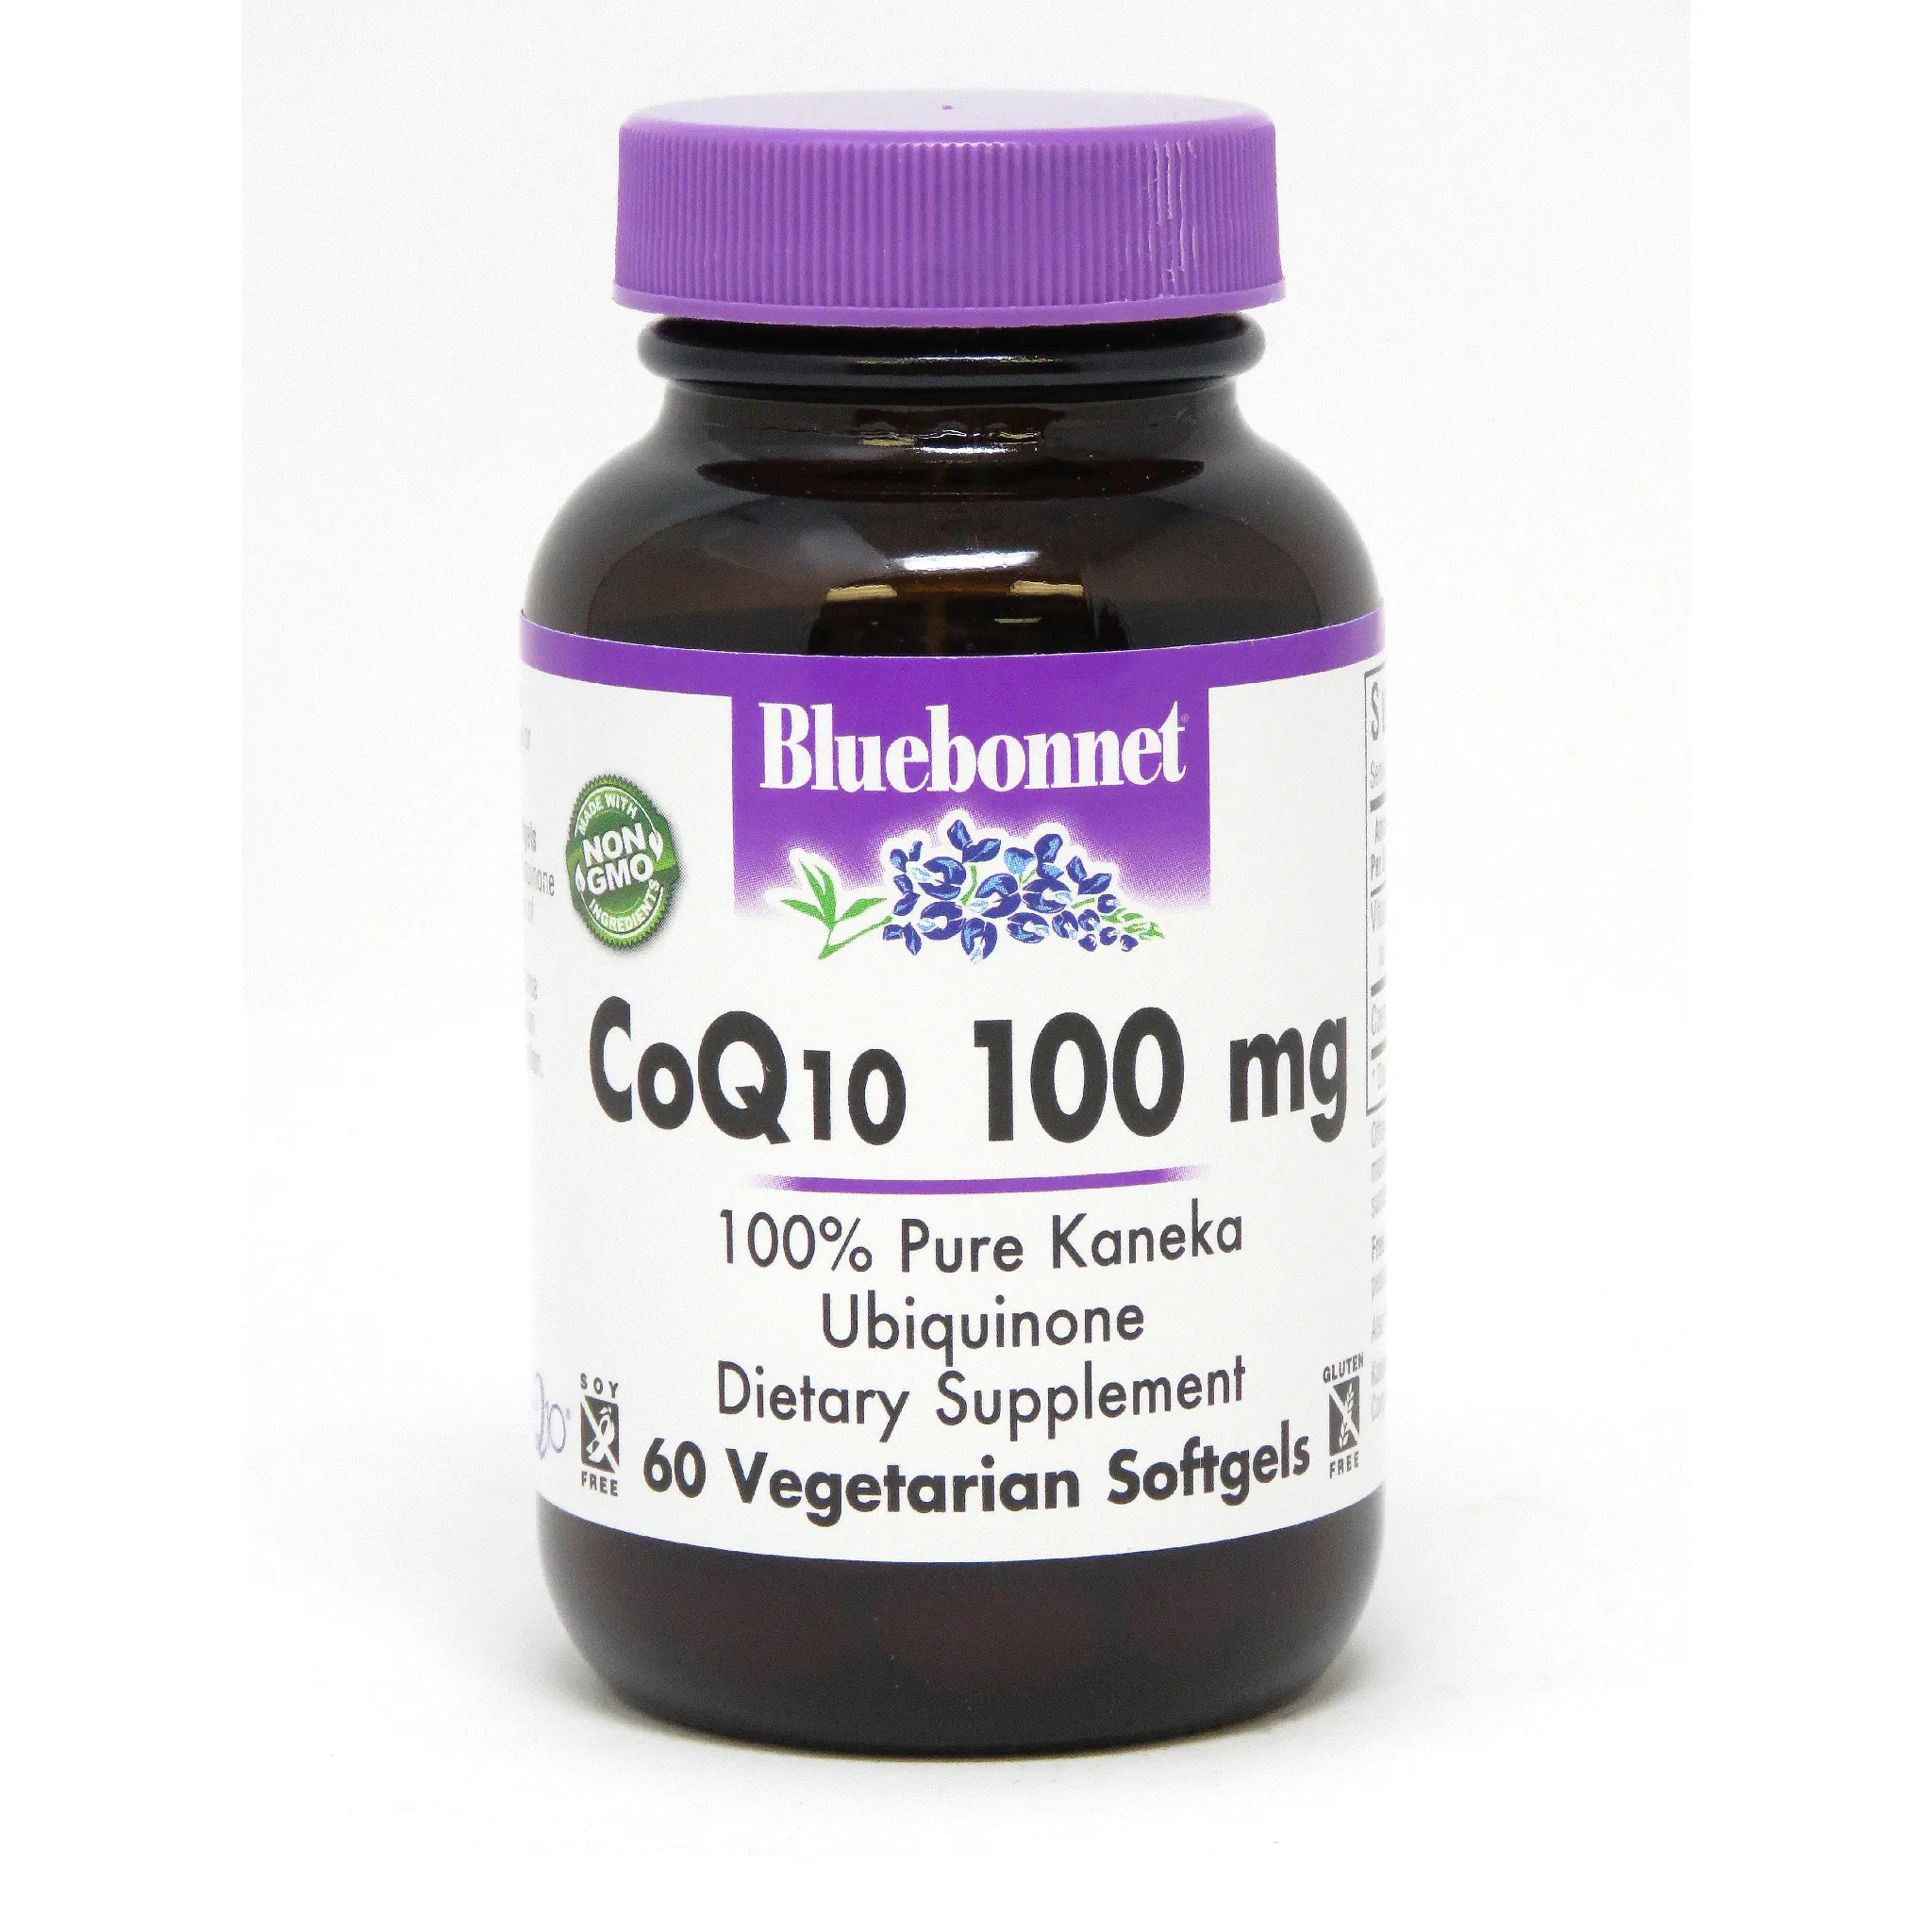 Bluebonnet - Coq10 100 mg softgel